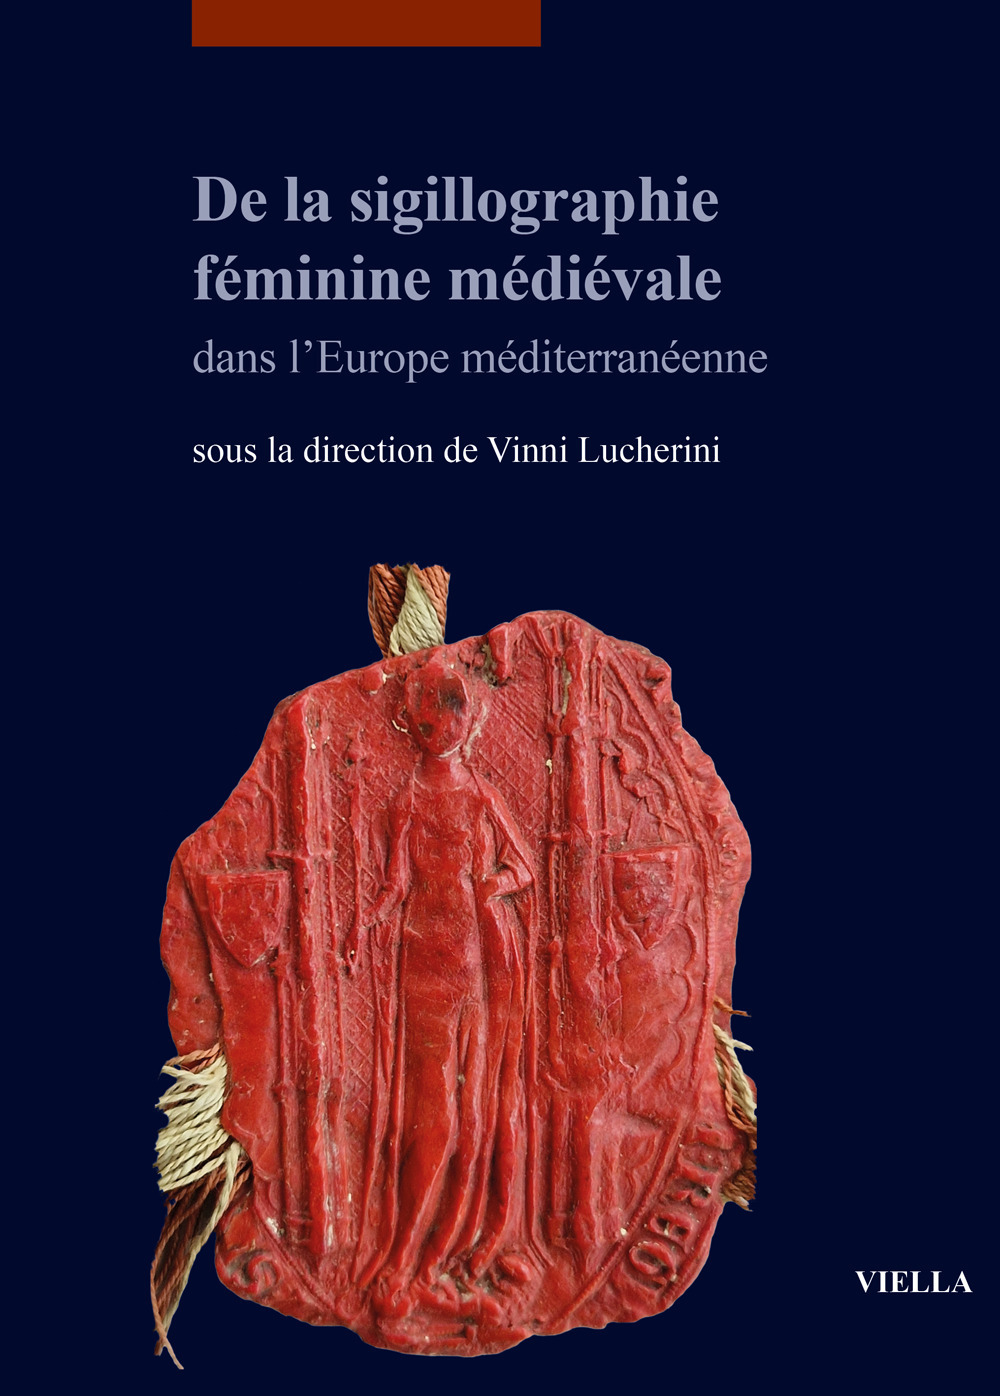 De la sigillographie féminine médiévale dans l'Europe méditerranéenne